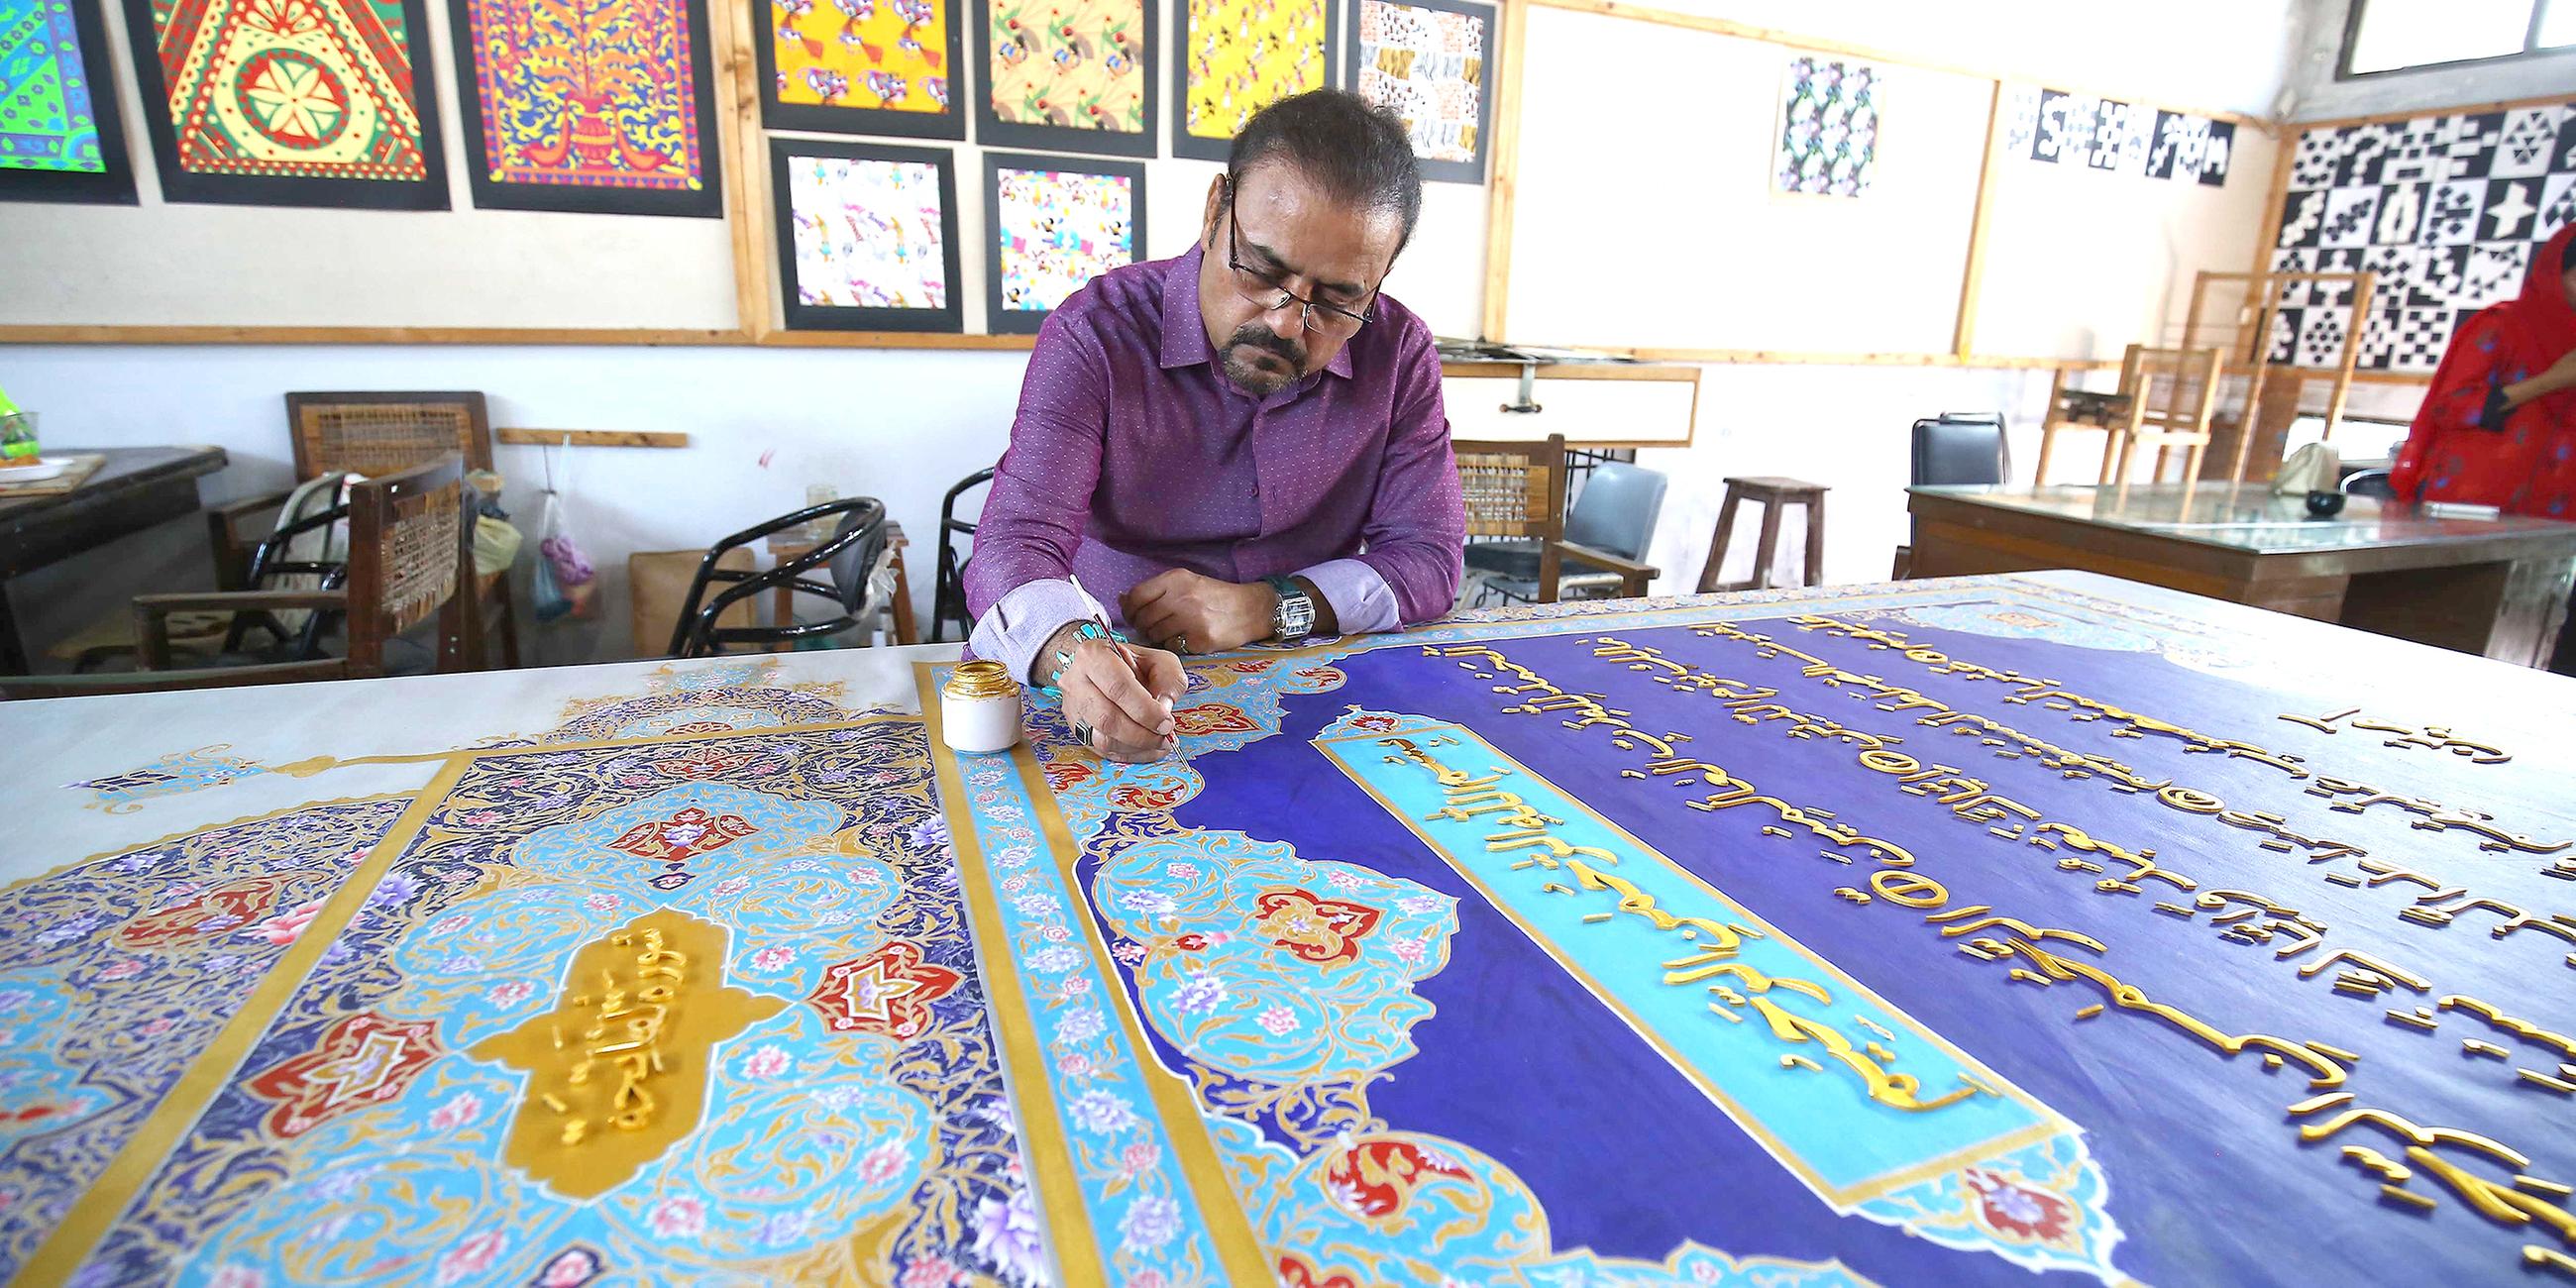 der pakistanische Künstler Shahid Rassam arbeitet an Korankalligraphien